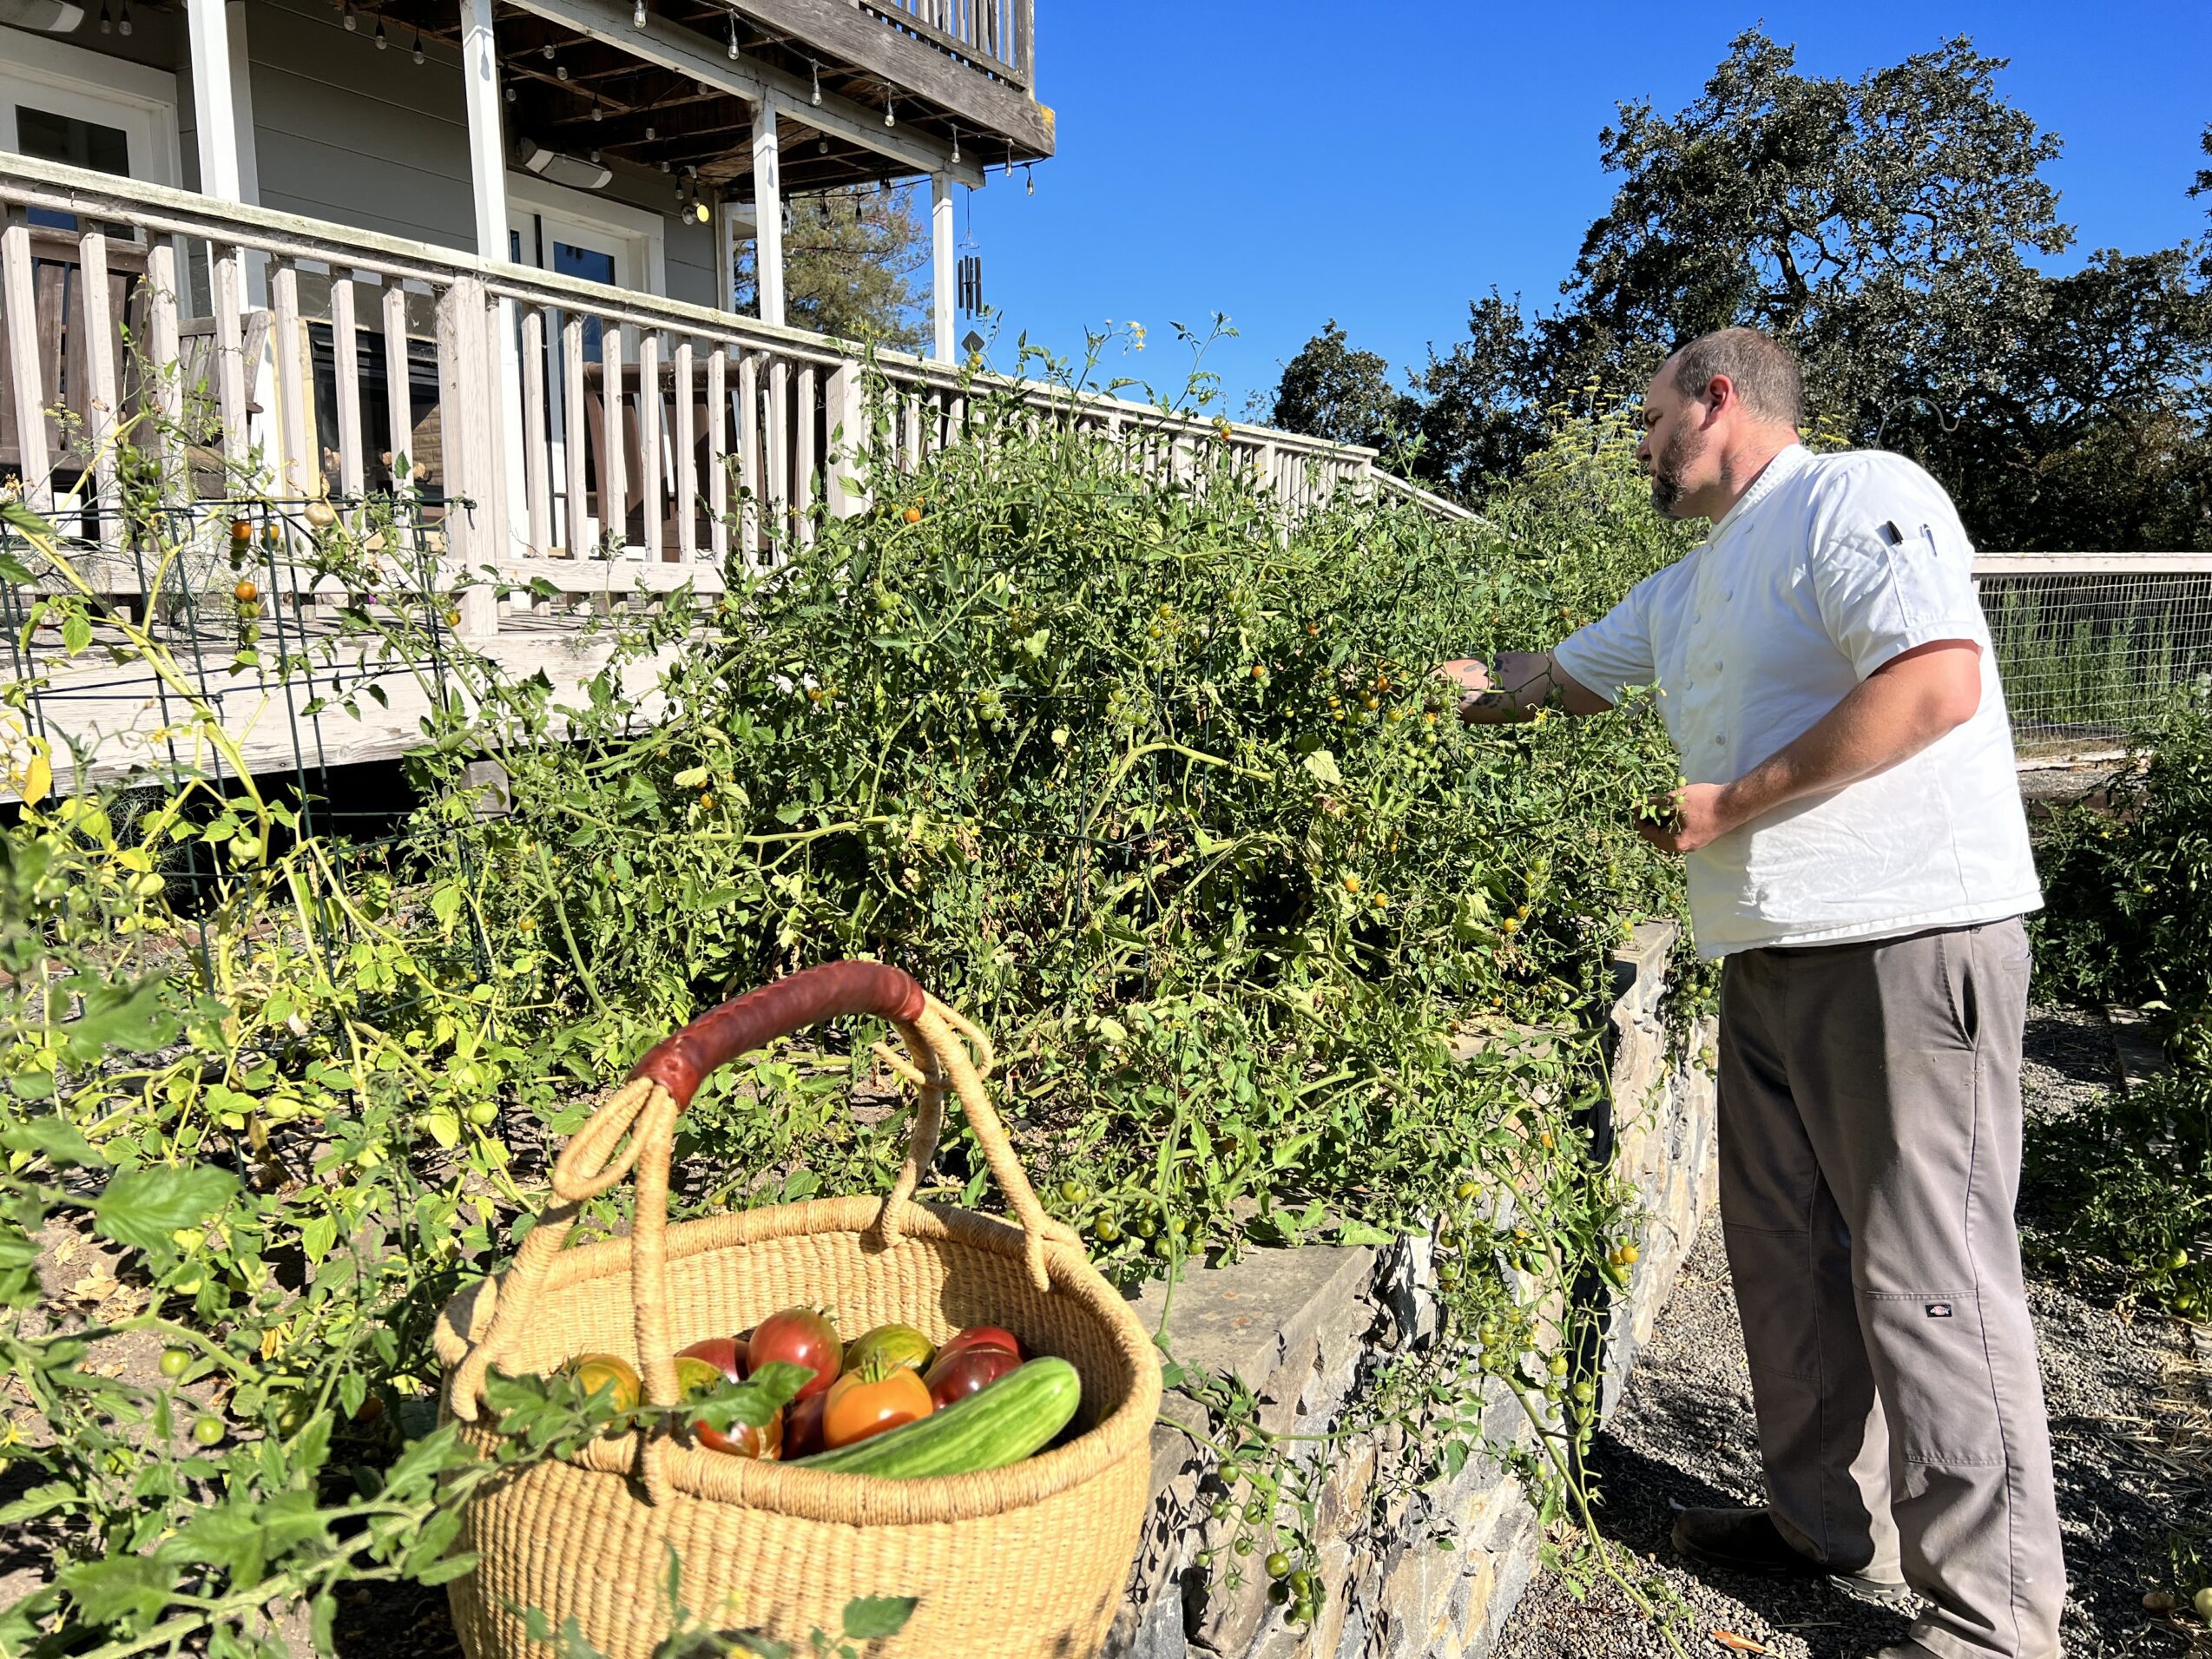 Chef Trevor harvesting Joe's farm